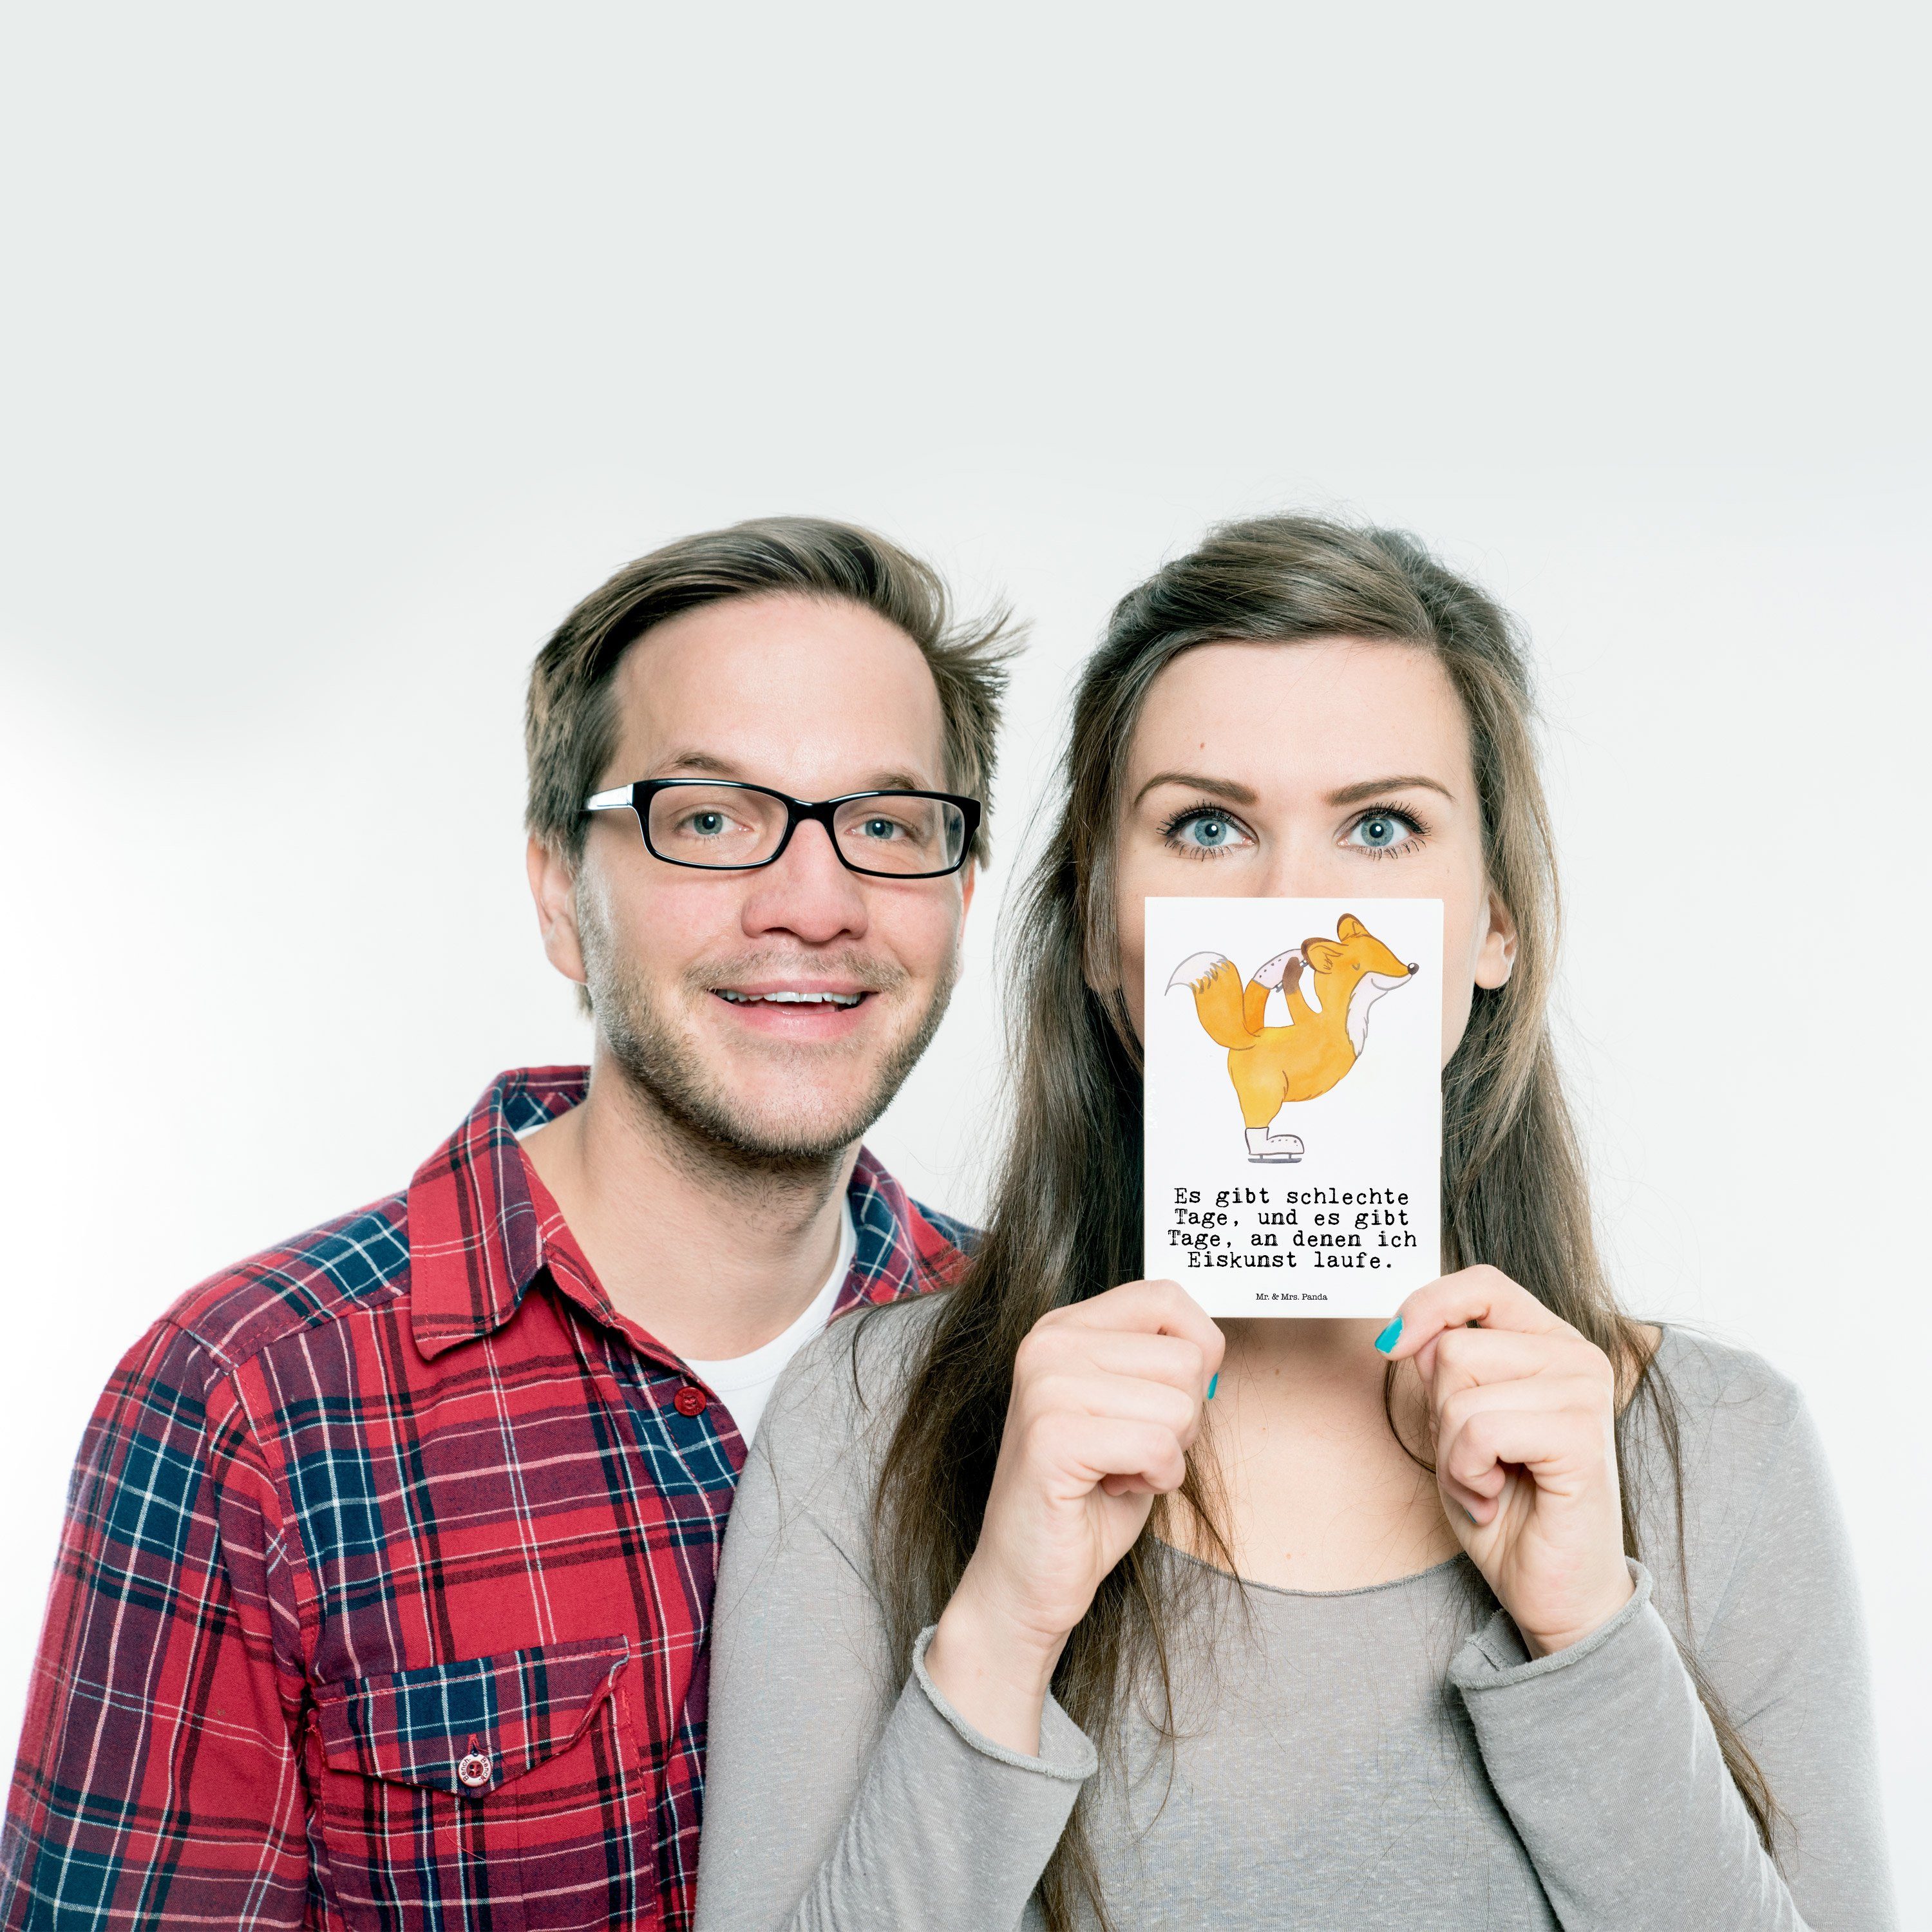 Mr. & Mrs. Panda Postkarte - Eiskunstläufer Geschenk, Tage Fuchs Gesche - Weiß Eiskunstläuferin